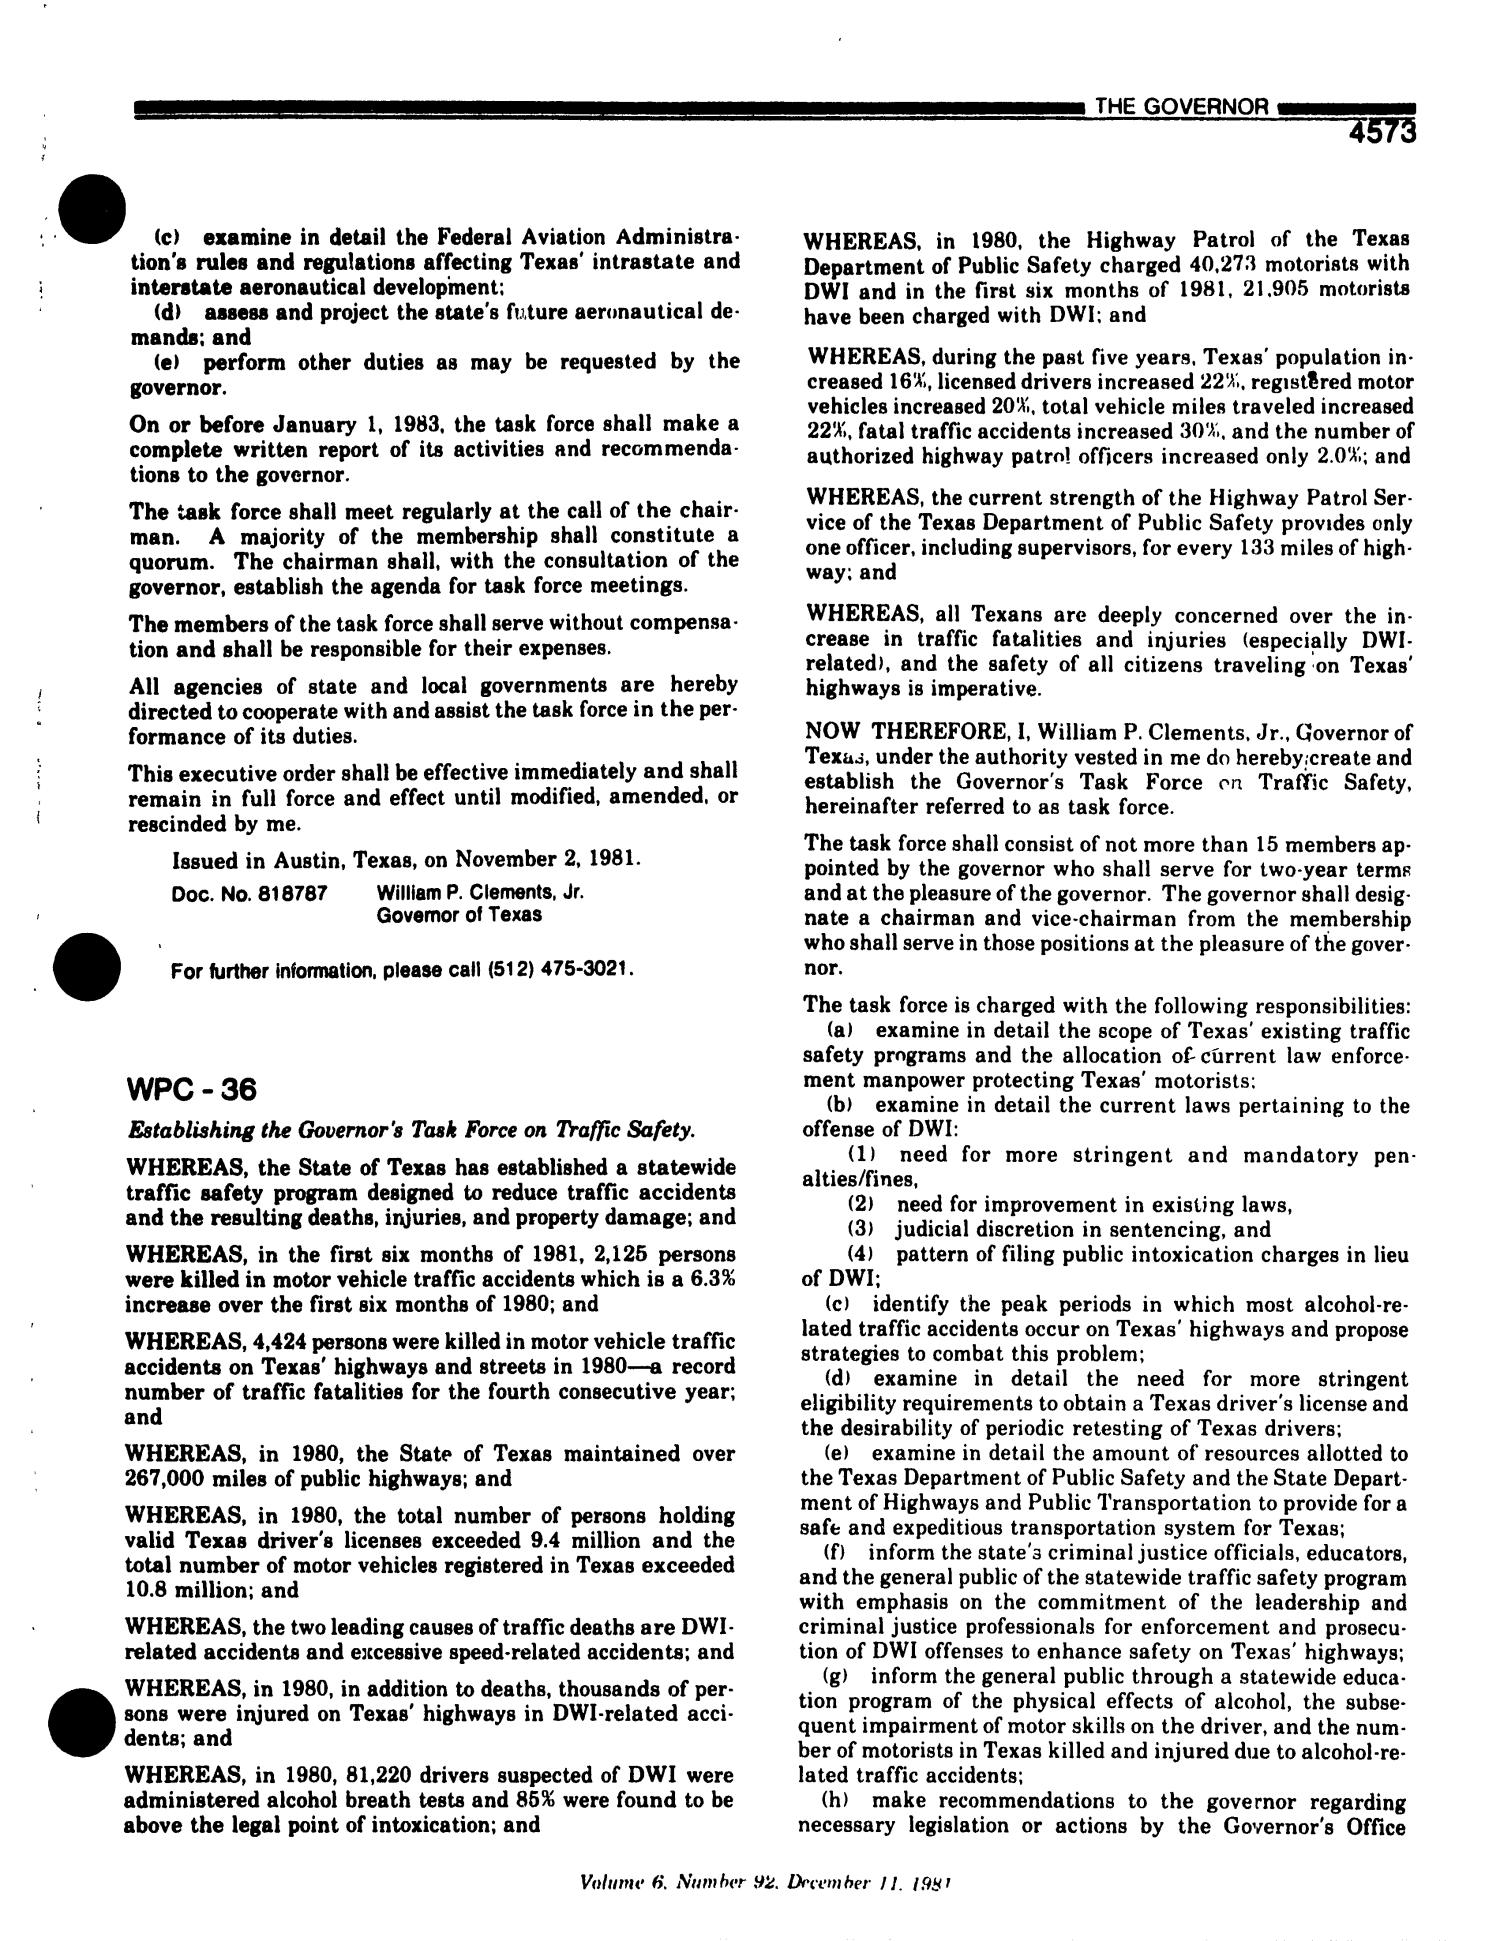 Texas Register, Volume 6, Number 92, Pages 4567-4656, December 11, 1981
                                                
                                                    4573
                                                